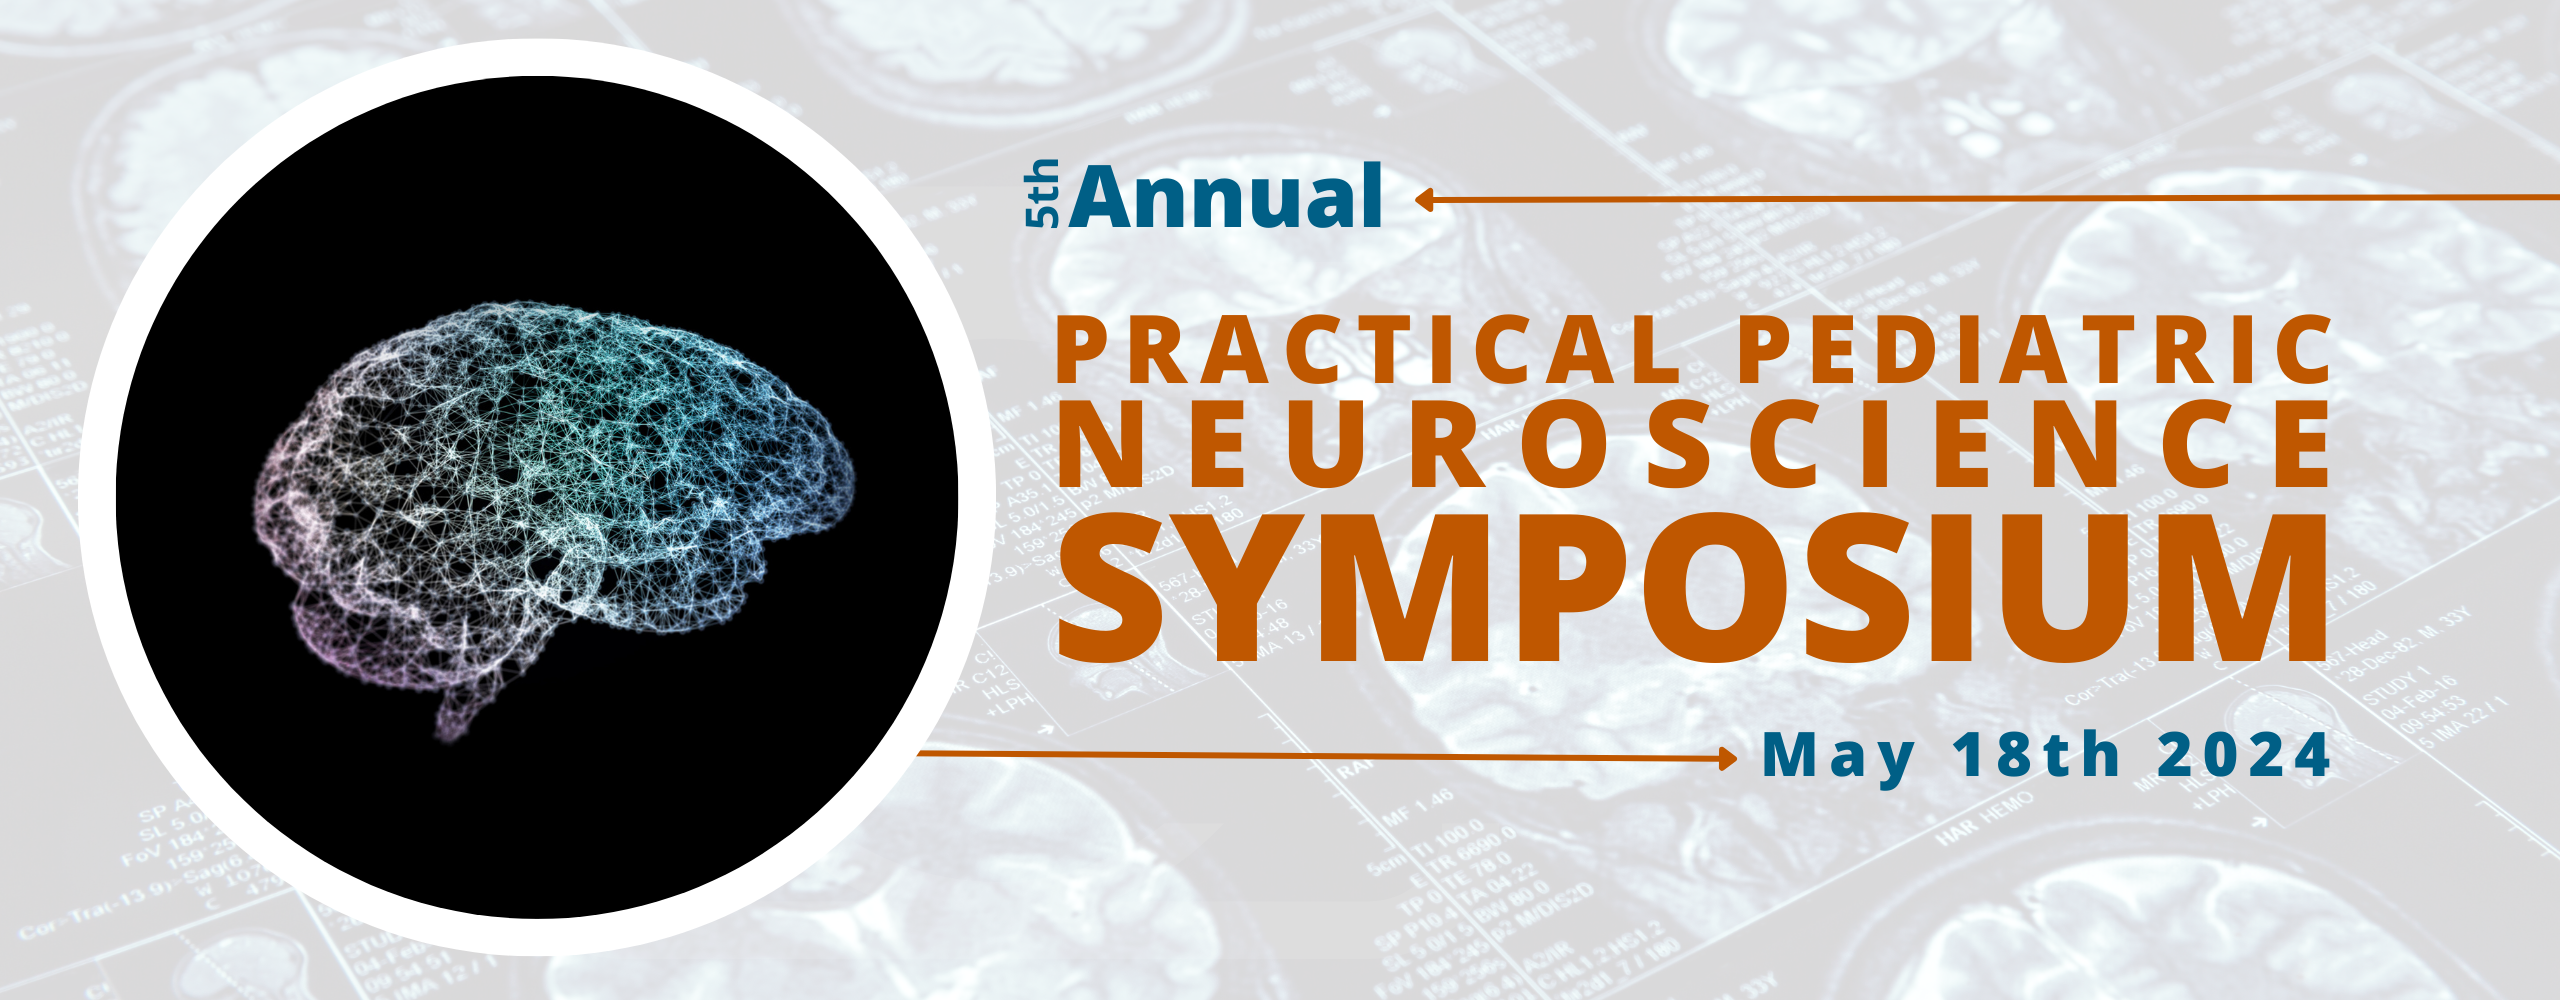 5th Annual Practical Pediatric Neuroscience Symposium Banner